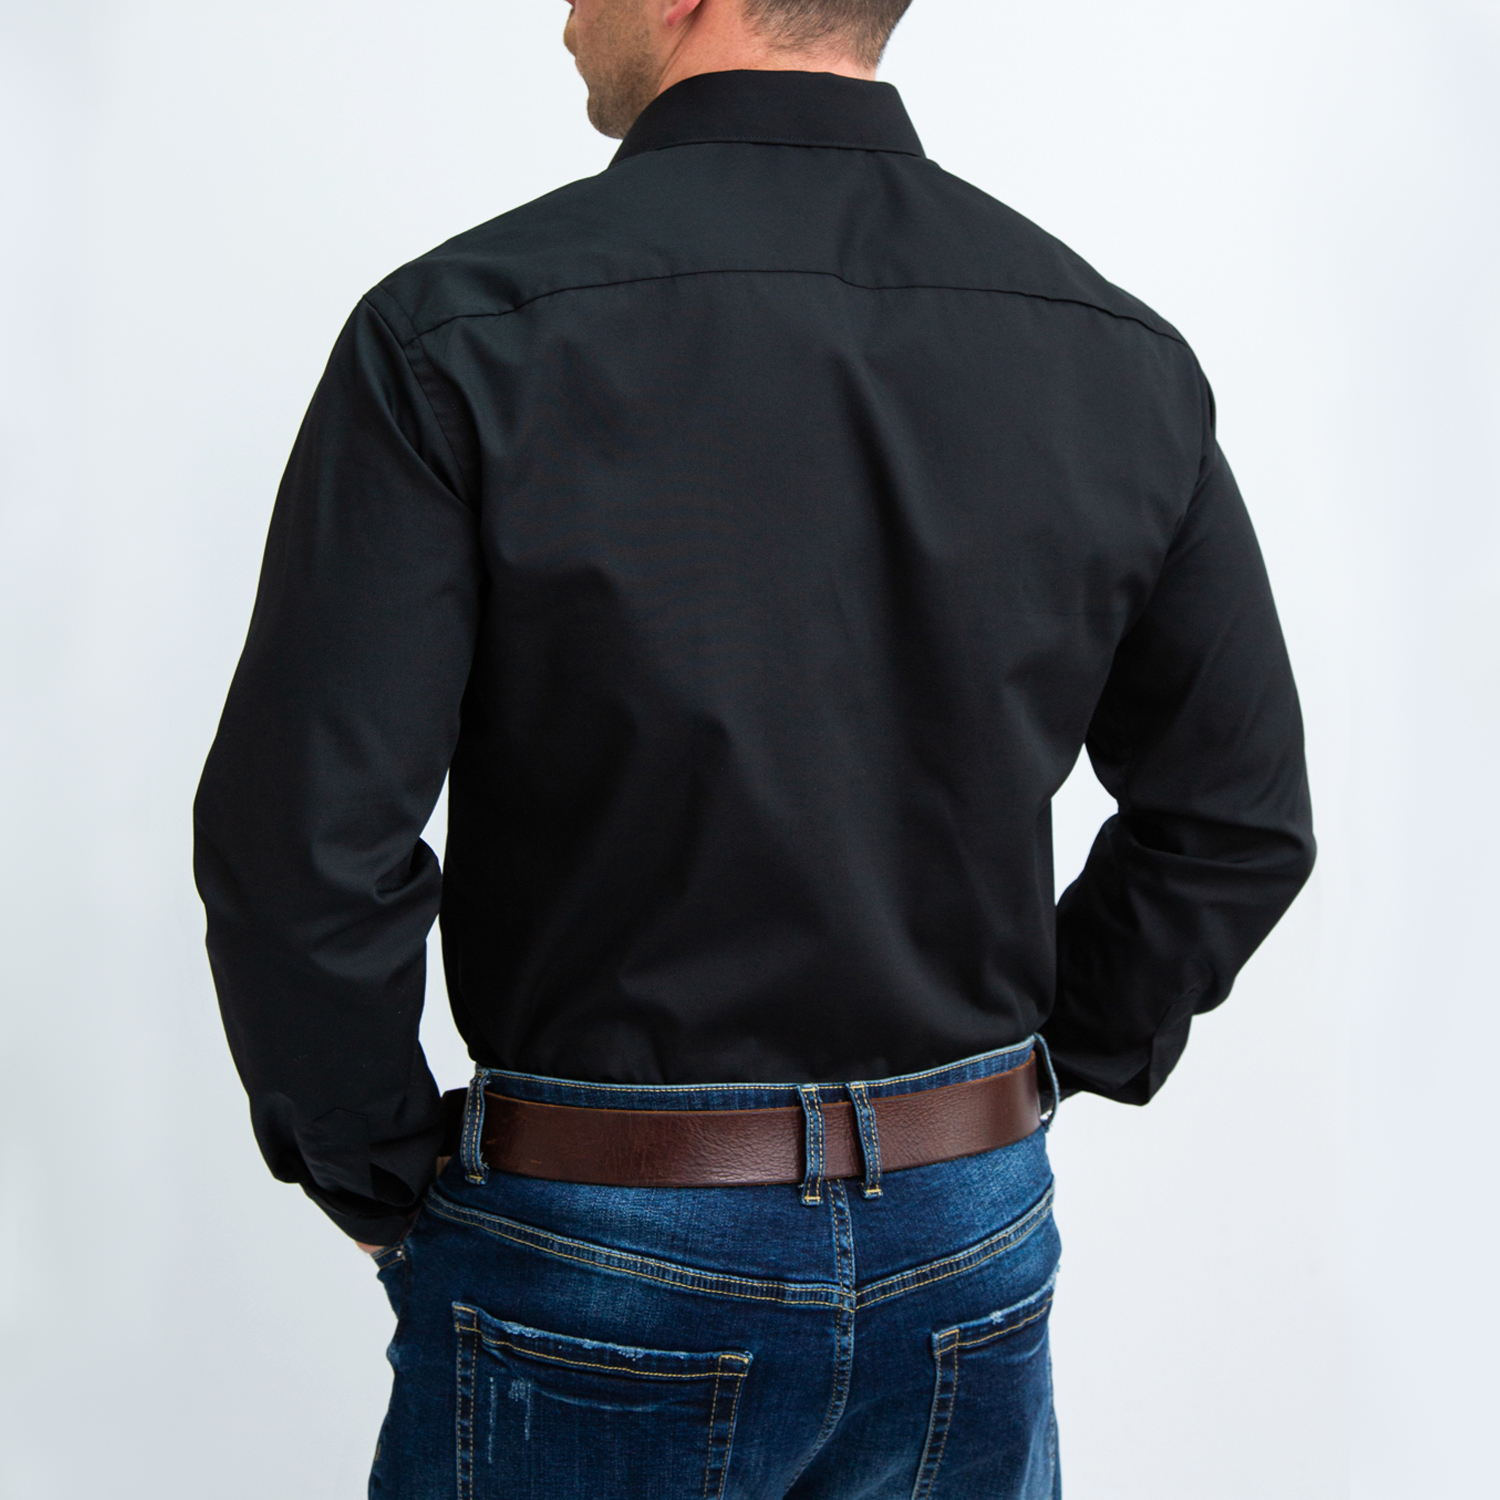 Рубашка мужская WOMEN MEN WMOD21B09-170 черная 40